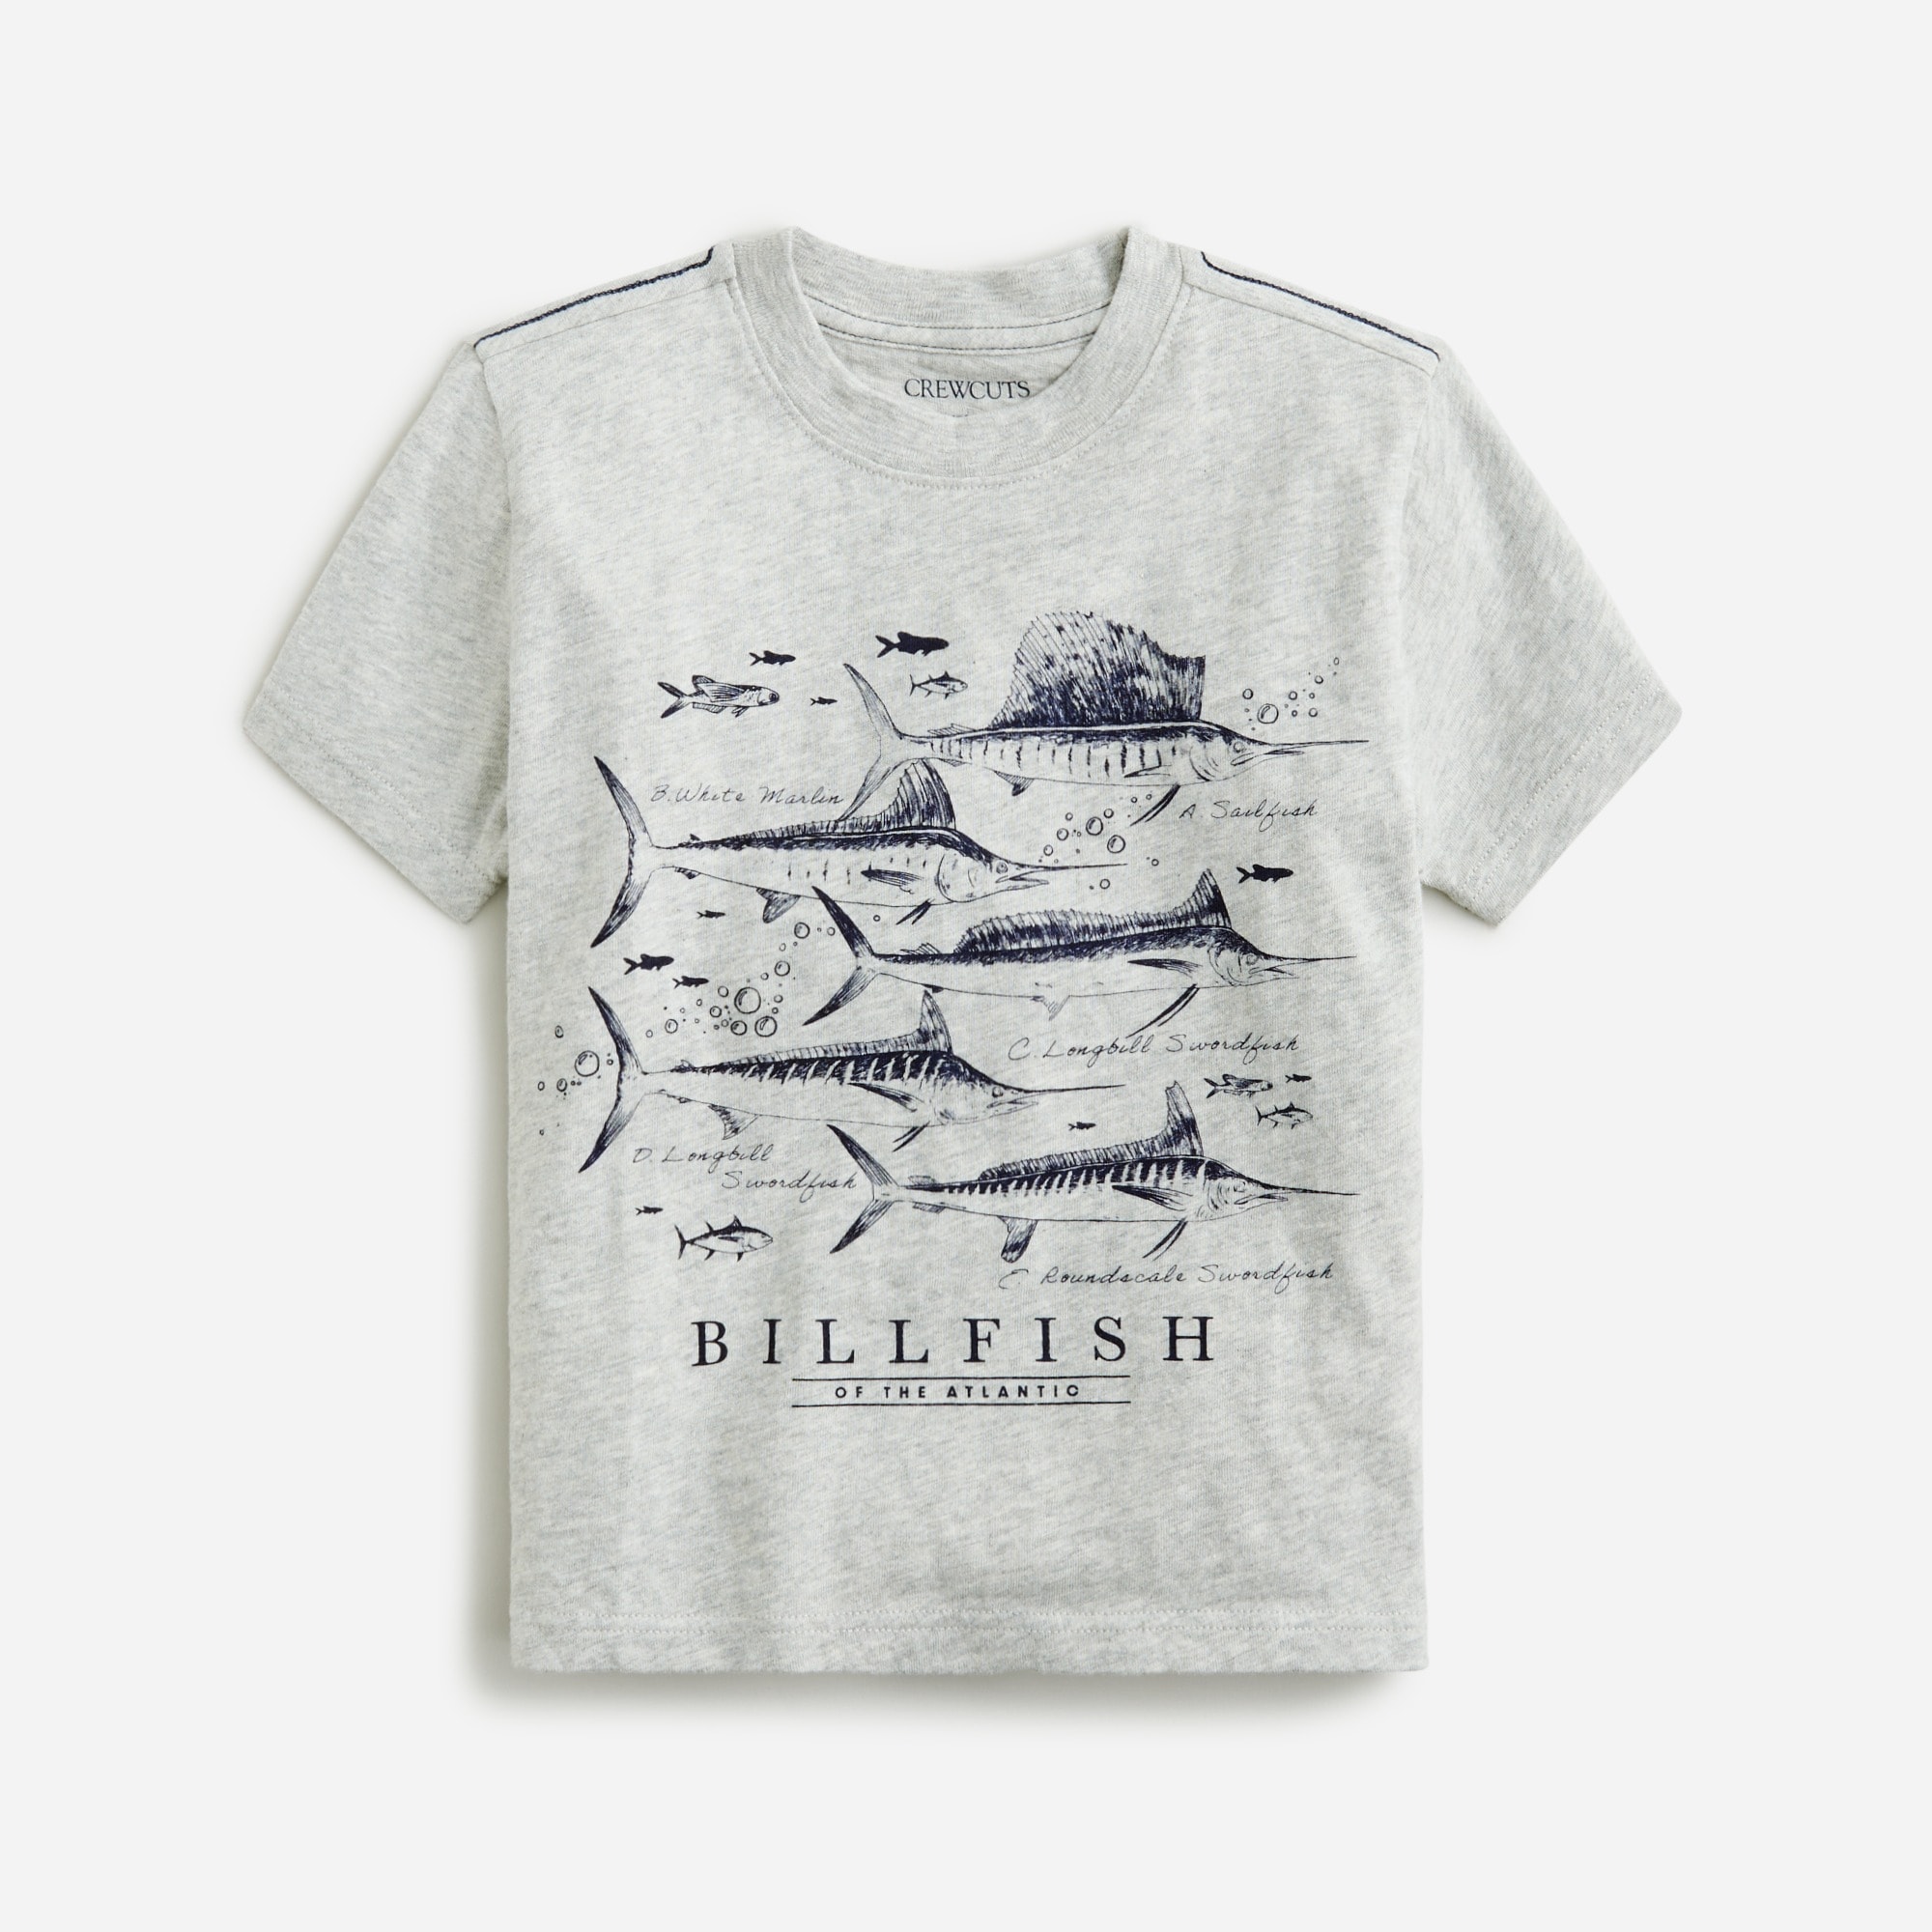  Kids' billfish graphic T-shirt